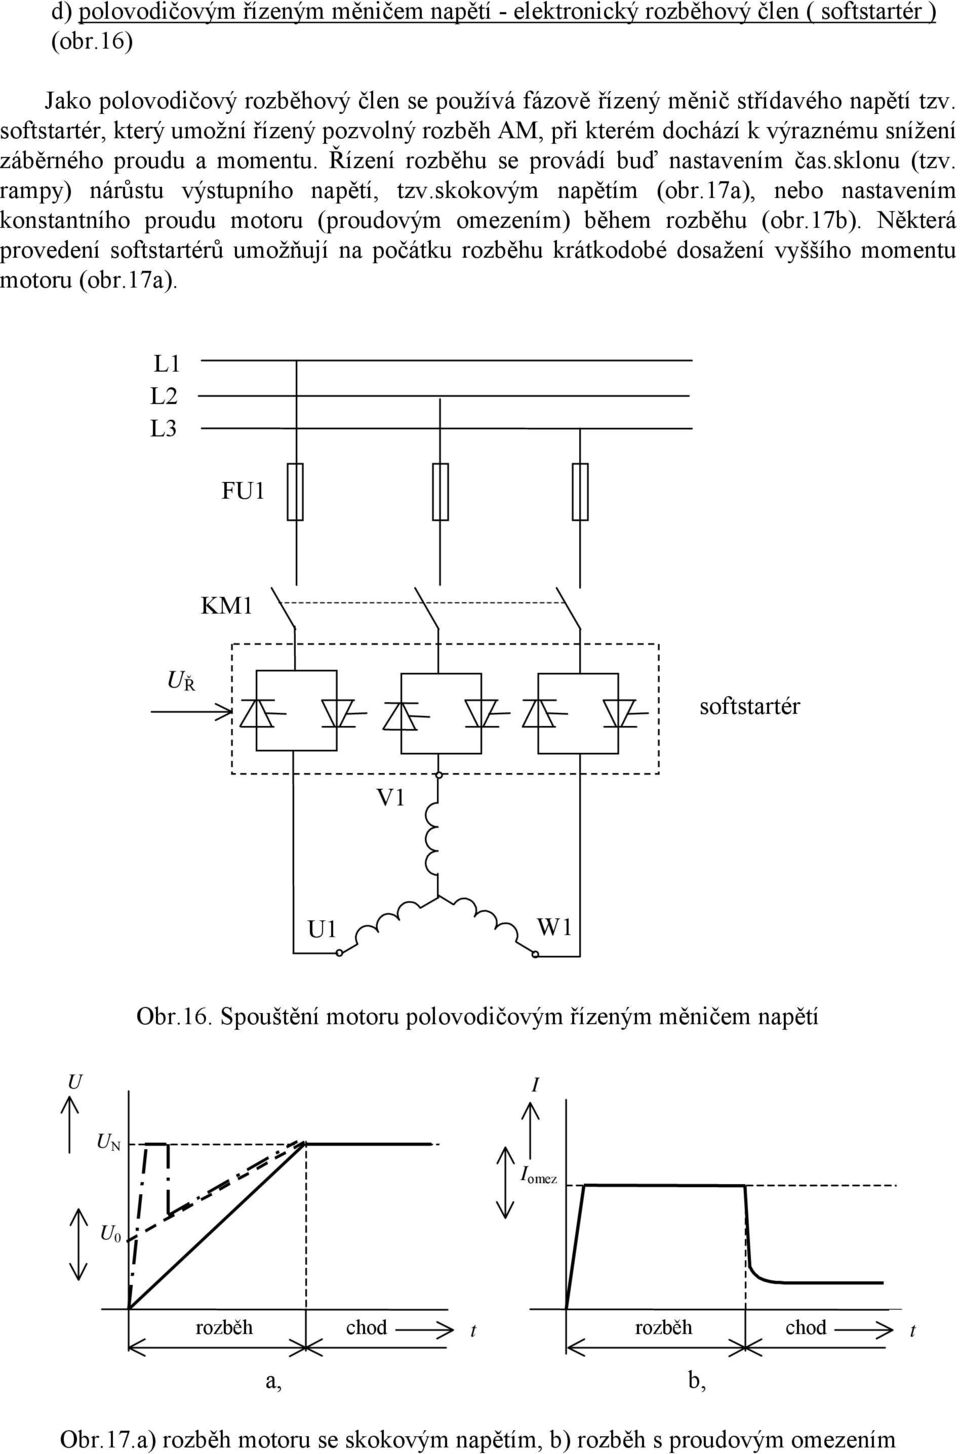 rampy) árůstu výstupího apětí, tzv.skokovým apětím (obr.7a), ebo astaveím kostatího proudu motoru (proudovým omezeím) během rozběhu (obr.7b).